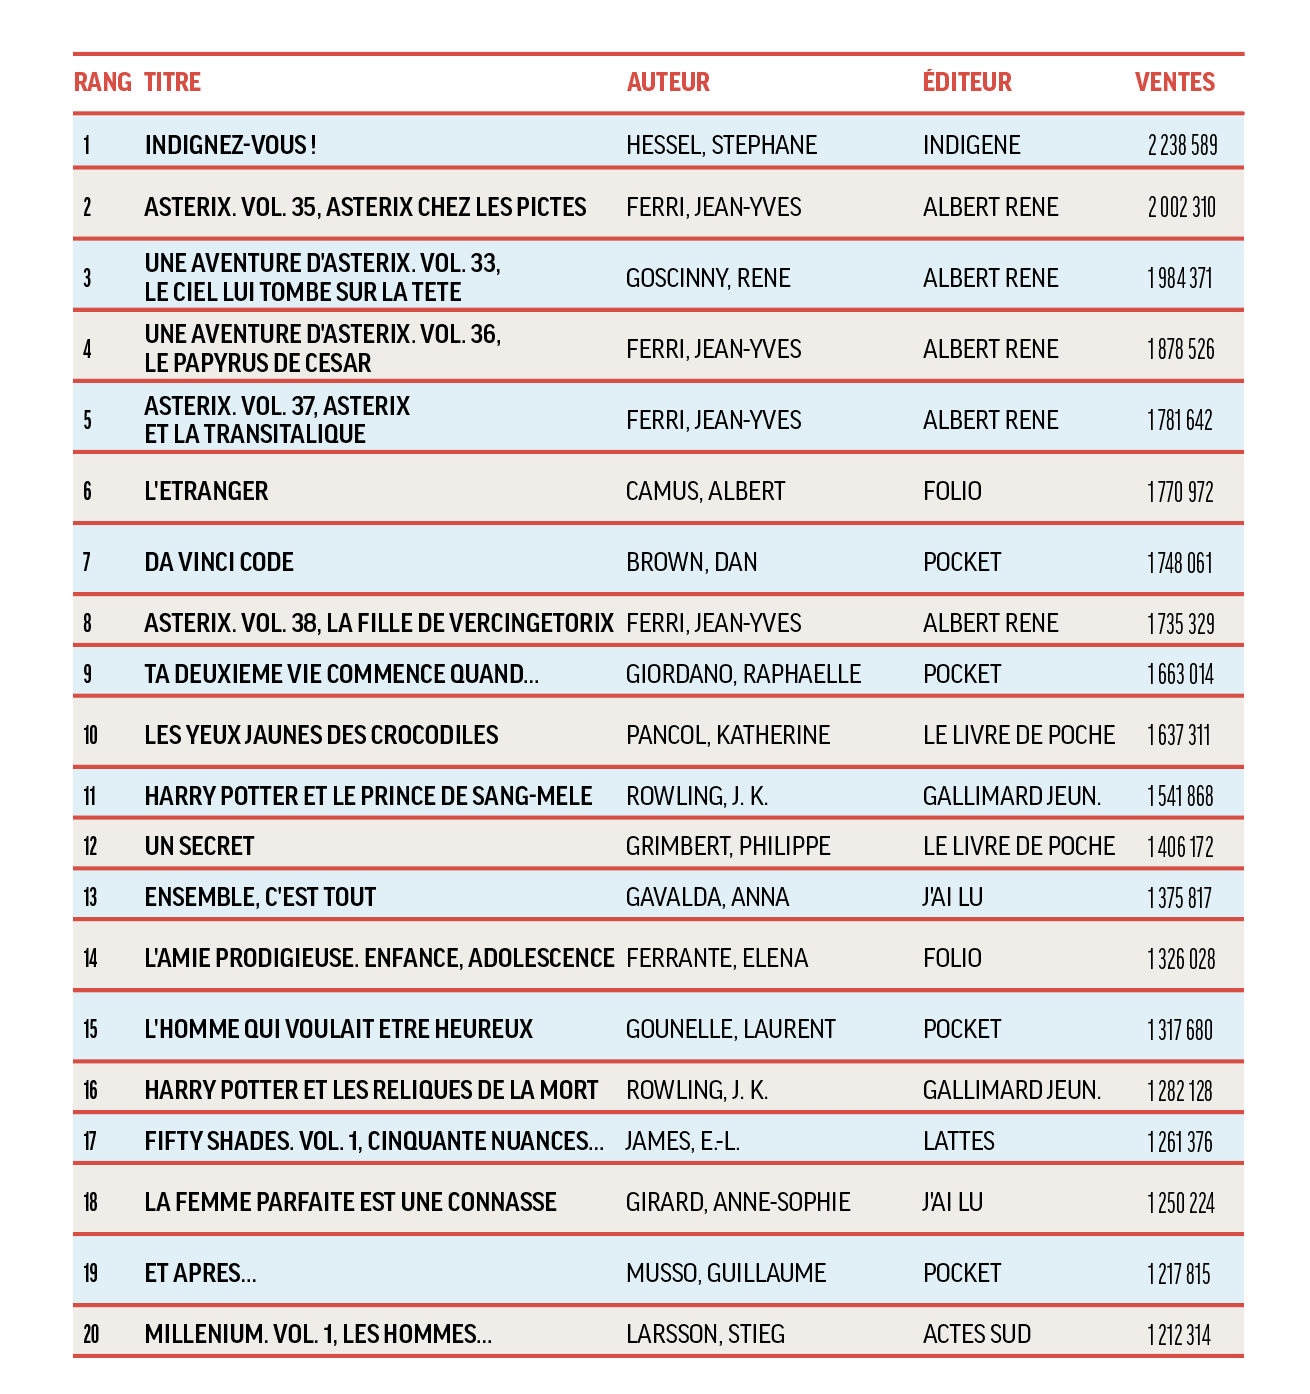 Les vingt meilleures ventes de livres entre 2005 et 2020 - Livres